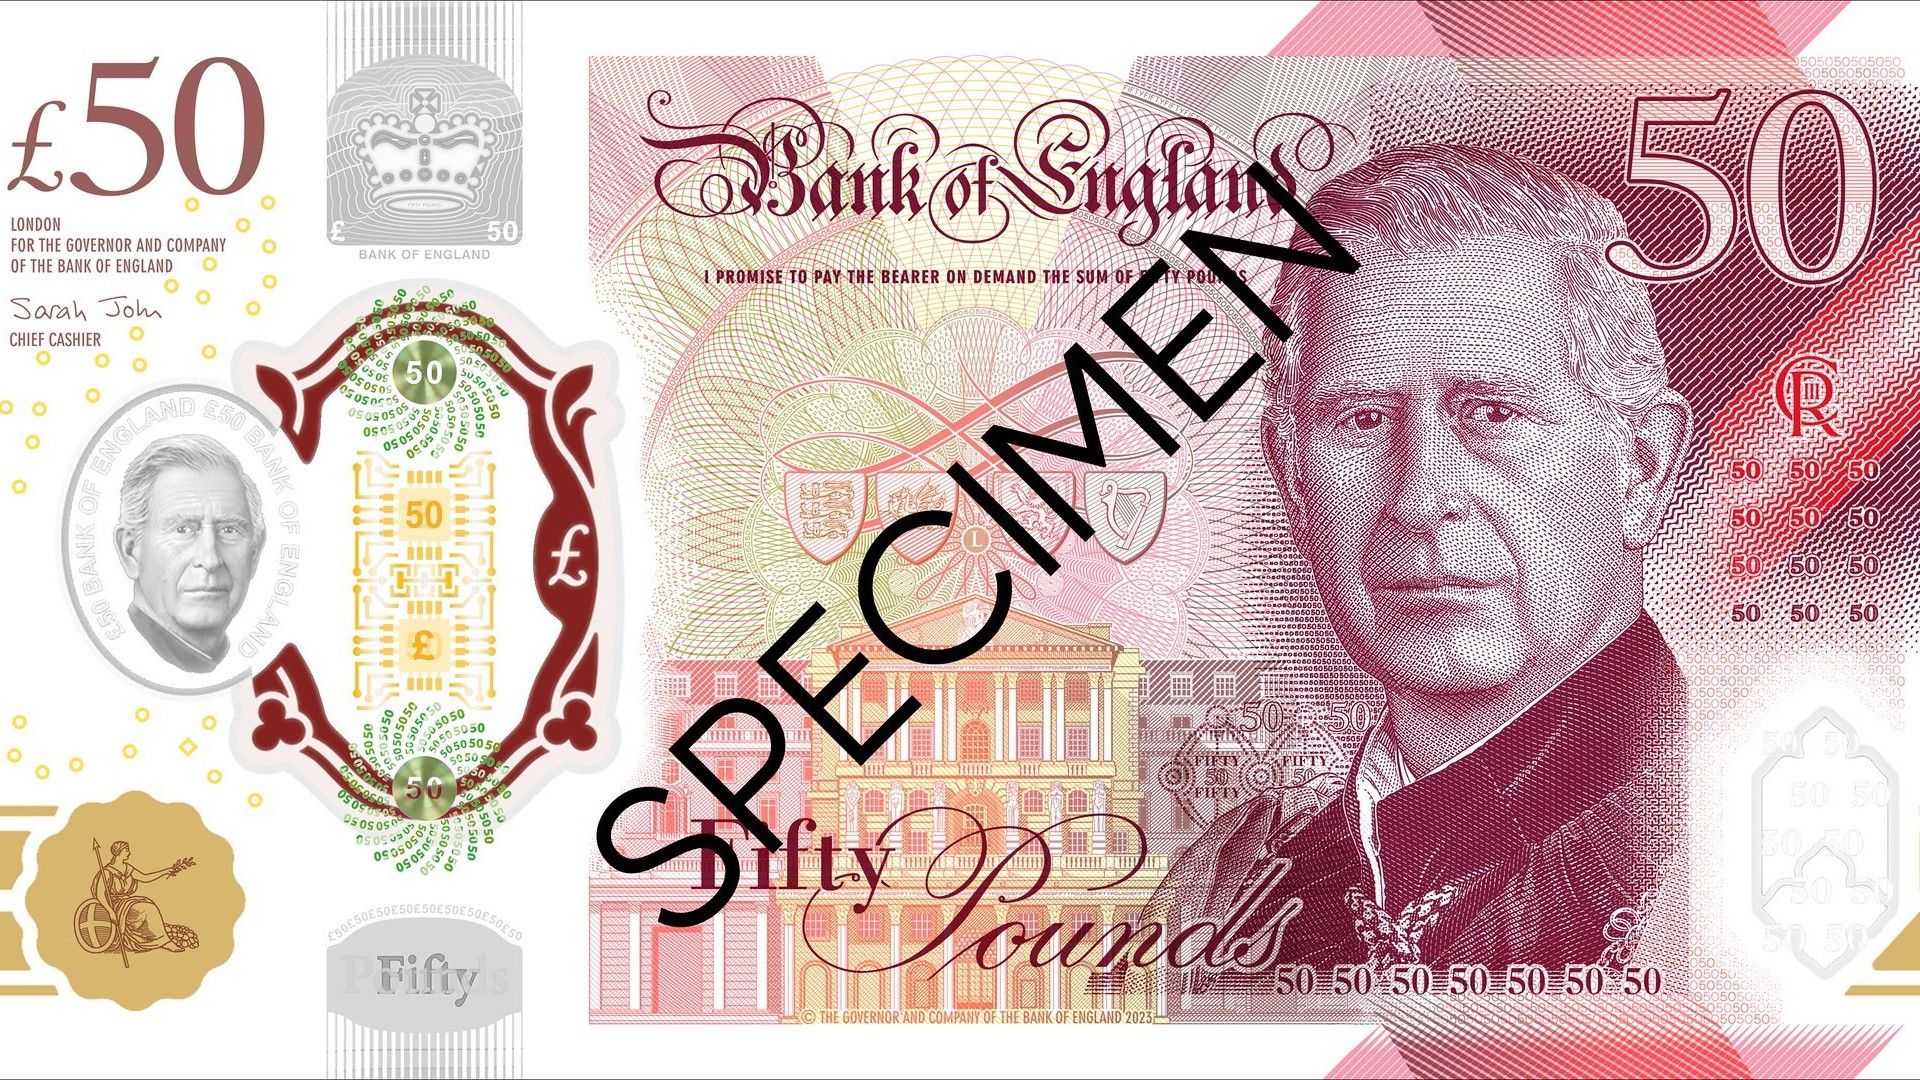 Muestra del diseño del nuevo billete de 50 libras